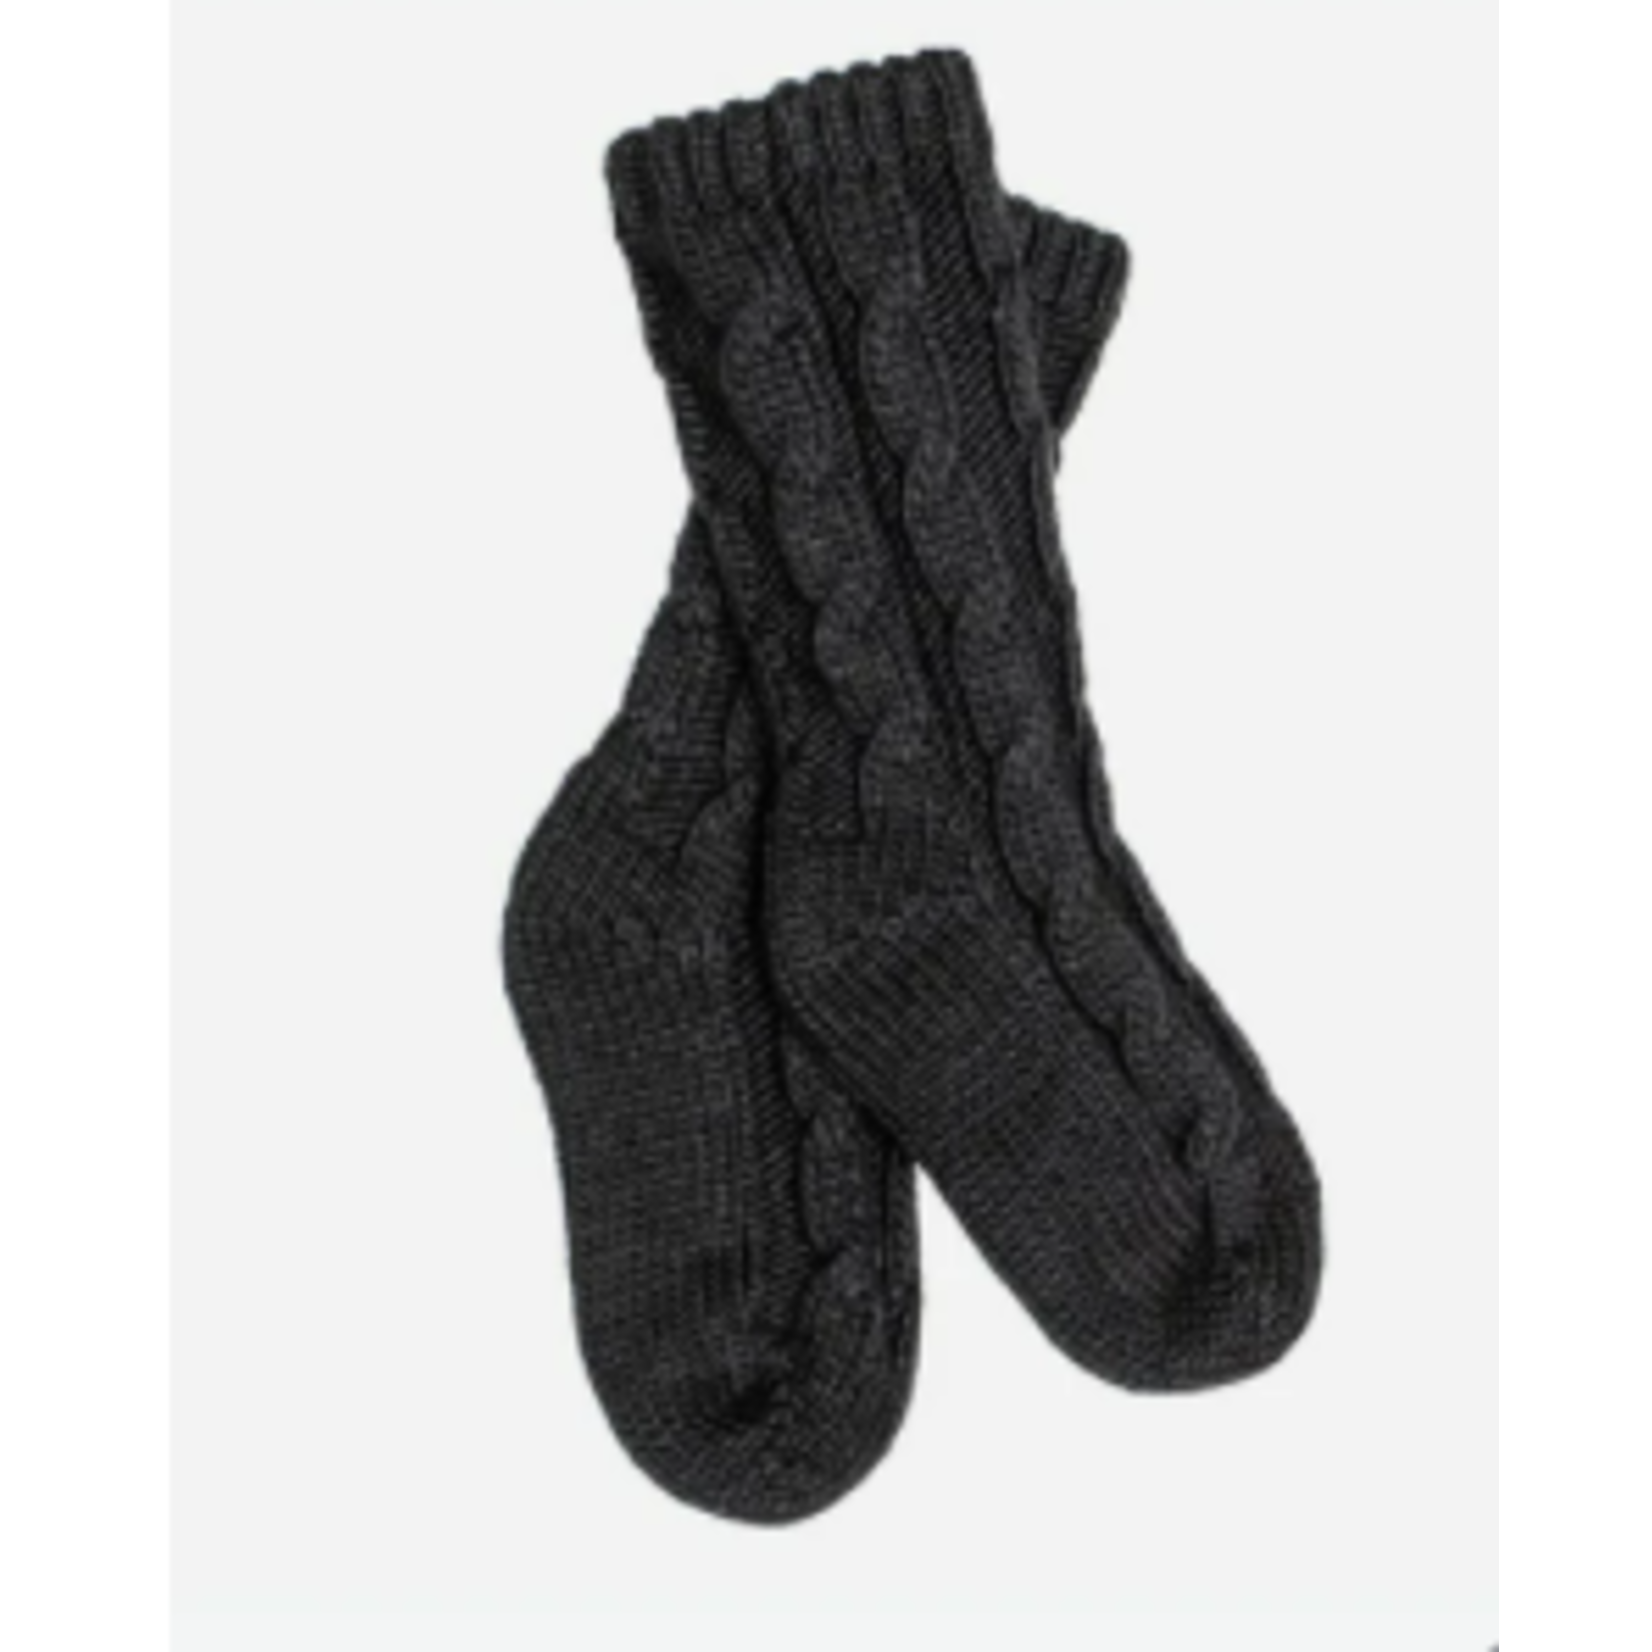 Kootenay Cable Knit Reading Socks - Uniform Pros